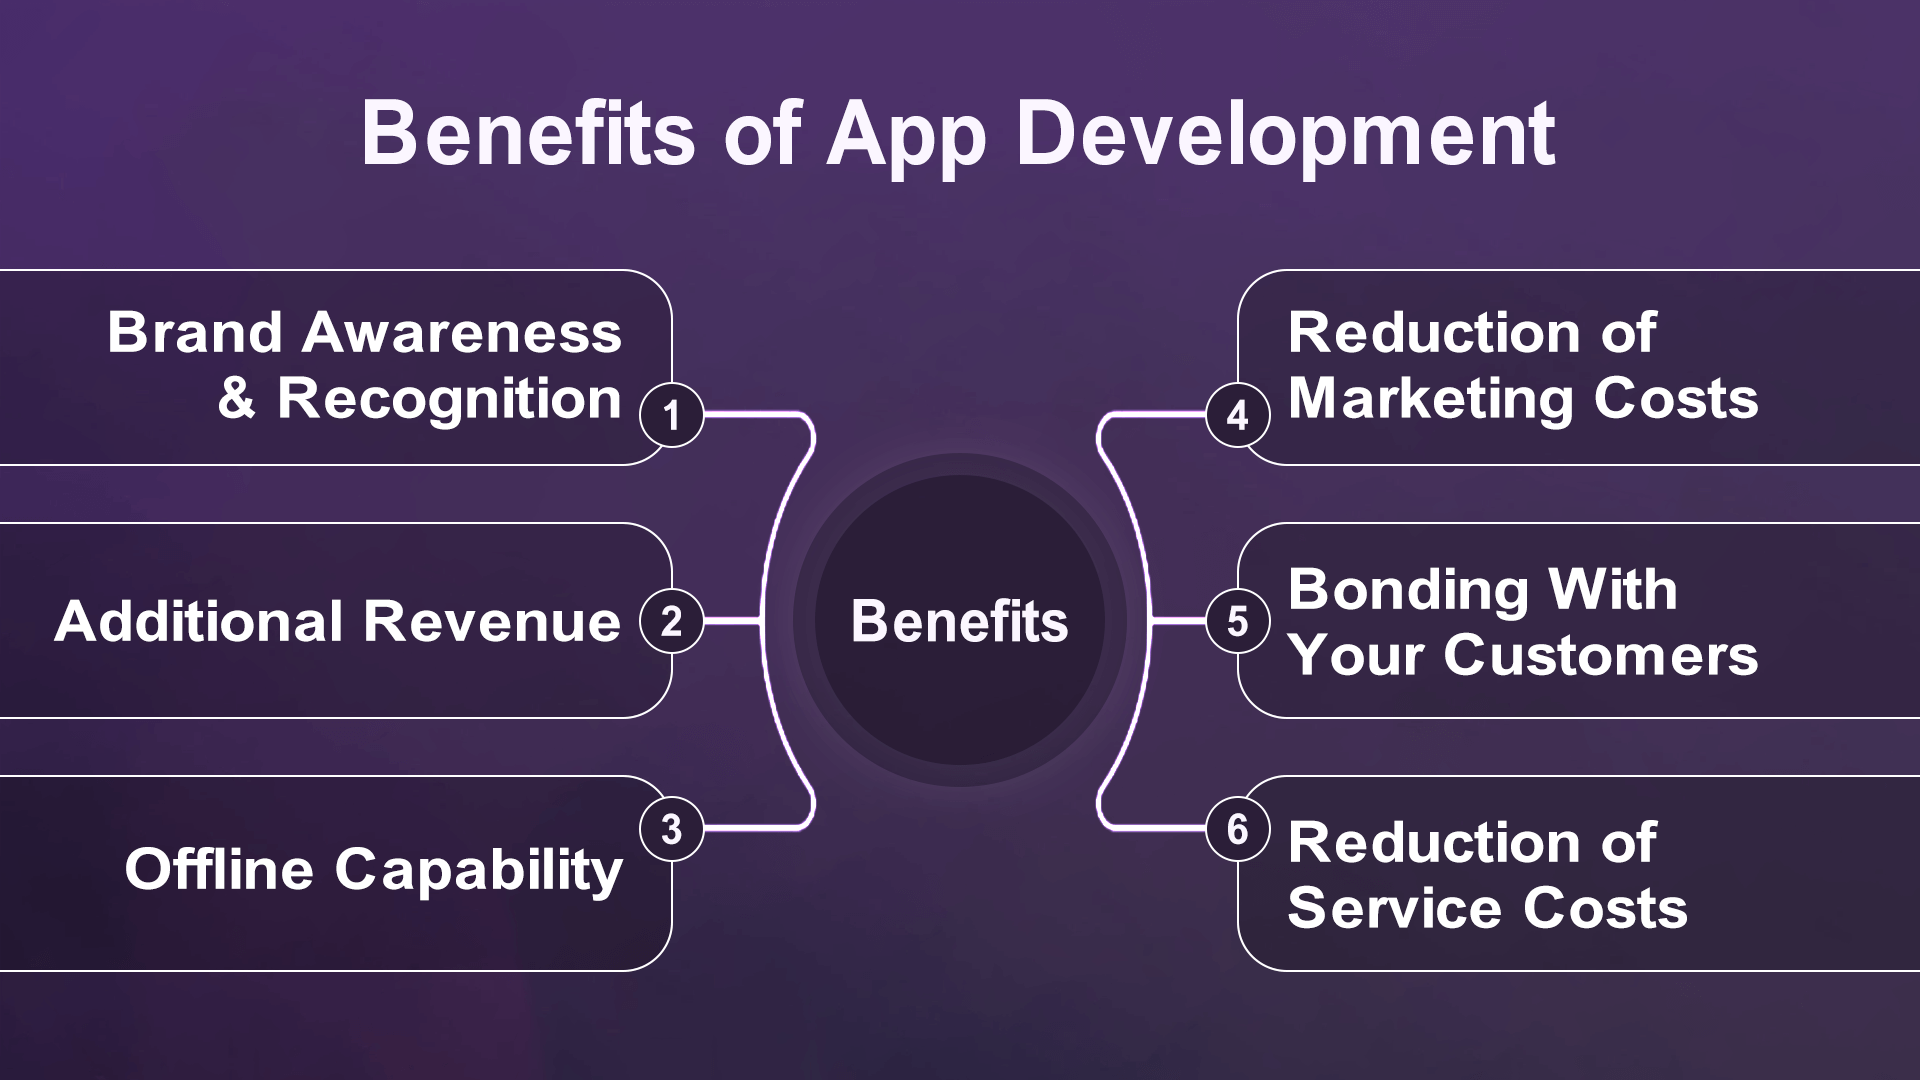 Mobile App Development: Top Practices, Tools, & Benefits 6